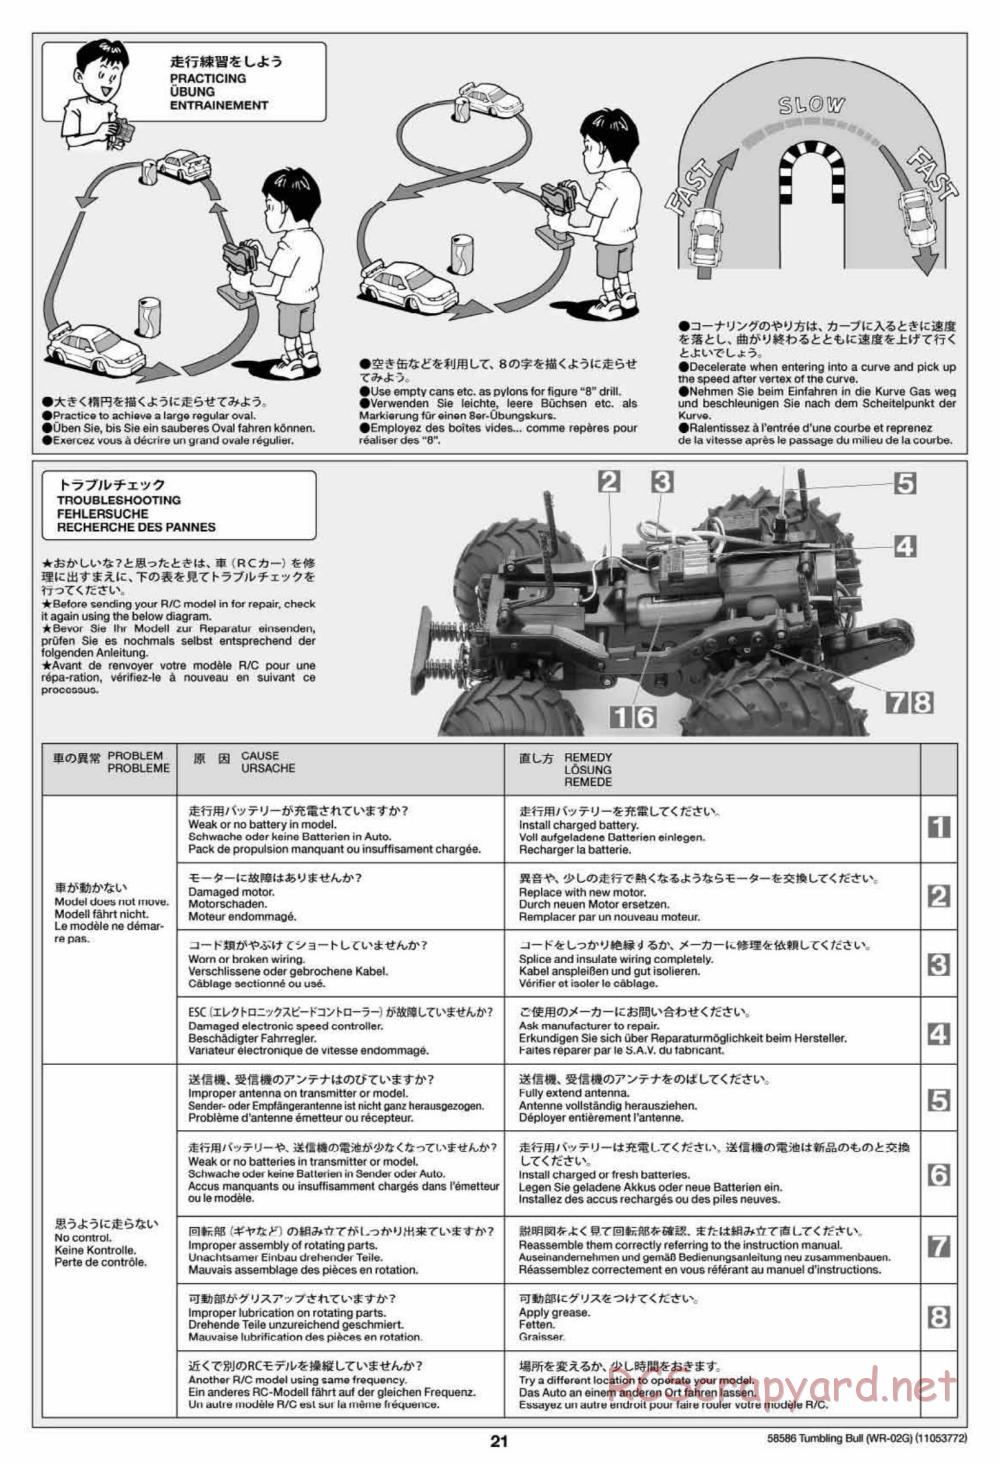 Tamiya - Tumbling Bull Chassis - Manual - Page 21